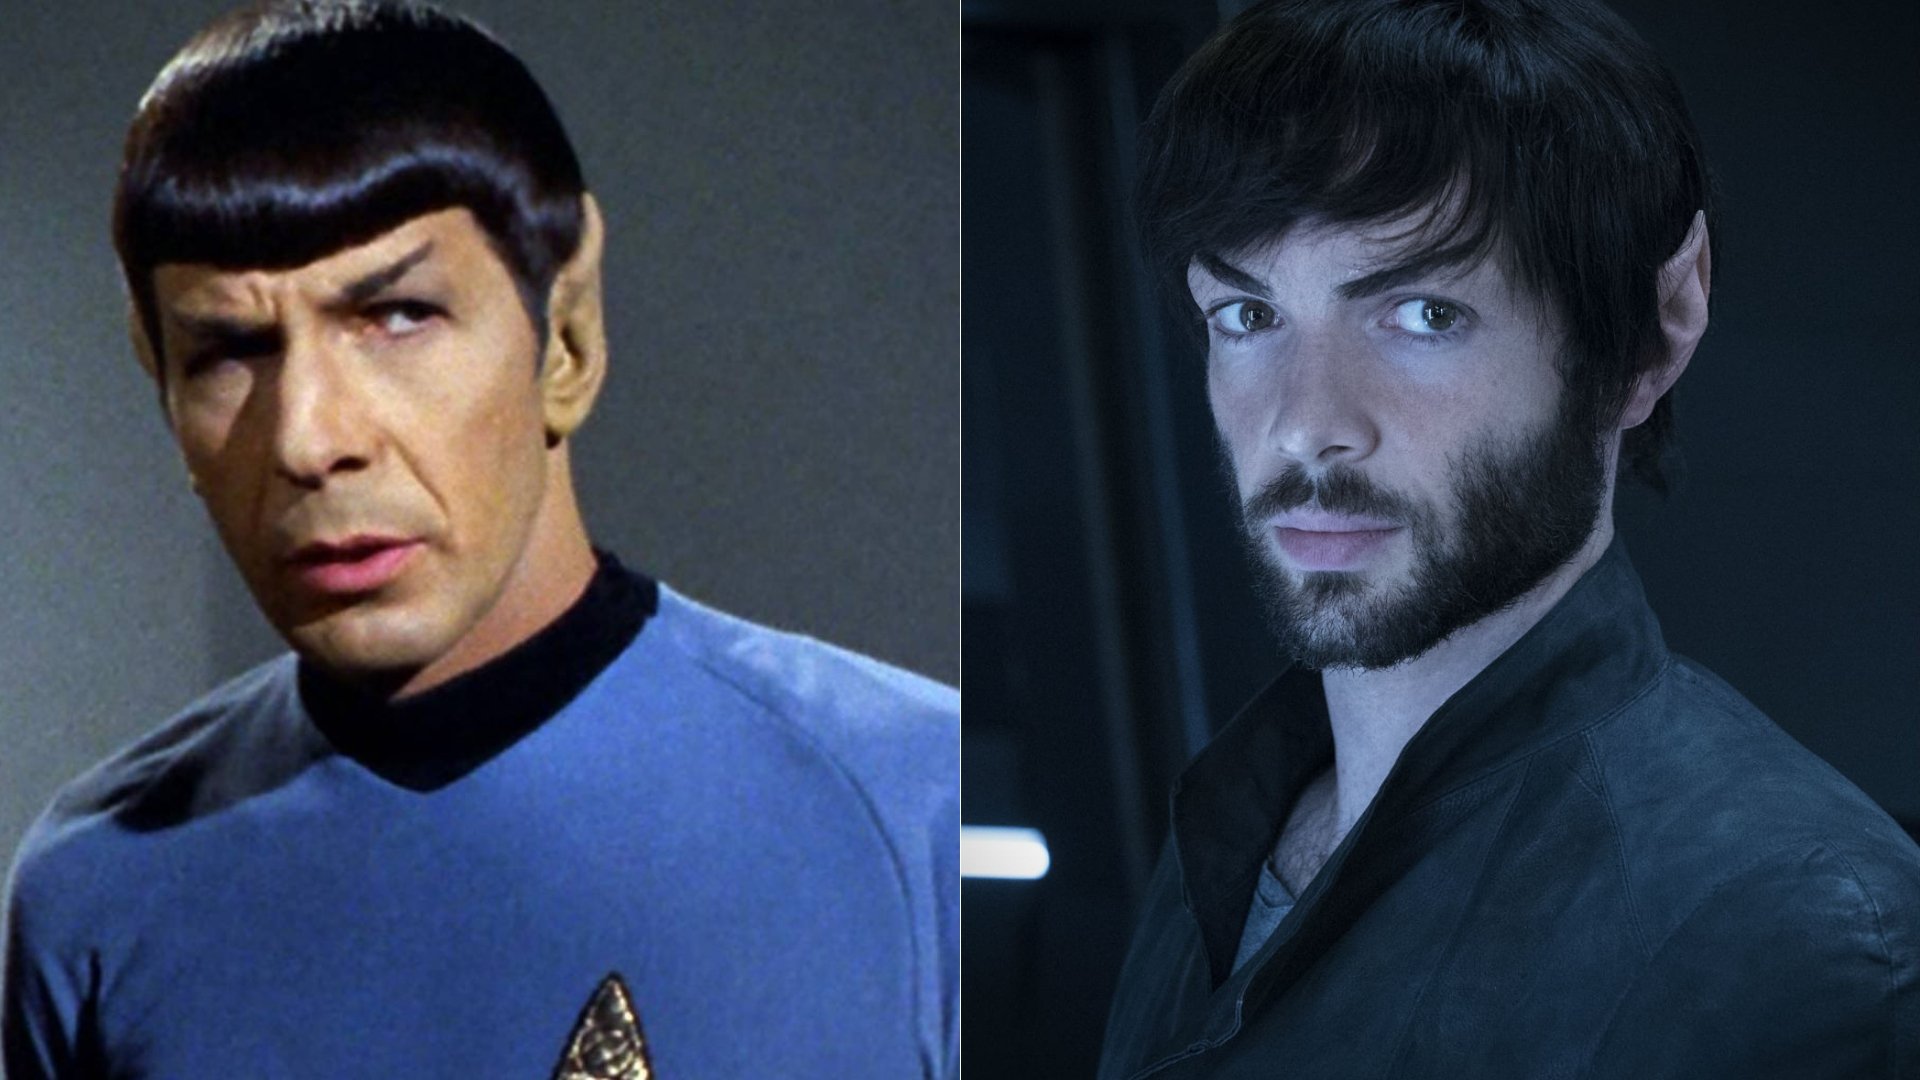 Ikona popkultury powraca. Dlaczego kochamy Spocka ze Star Treka?